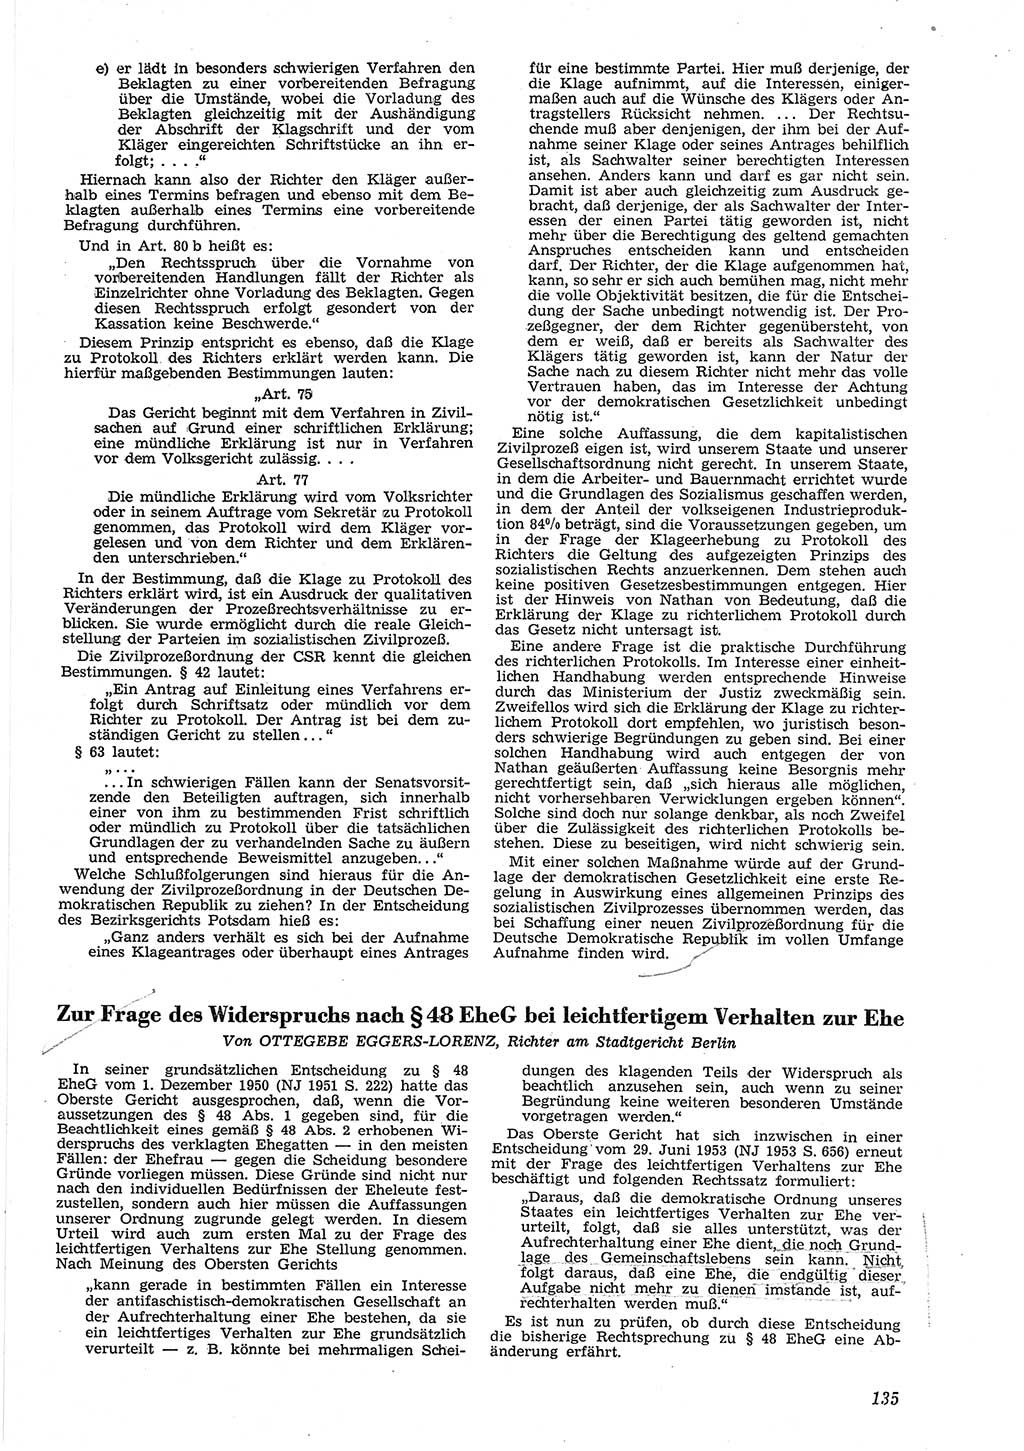 Neue Justiz (NJ), Zeitschrift für Recht und Rechtswissenschaft [Deutsche Demokratische Republik (DDR)], 8. Jahrgang 1954, Seite 135 (NJ DDR 1954, S. 135)